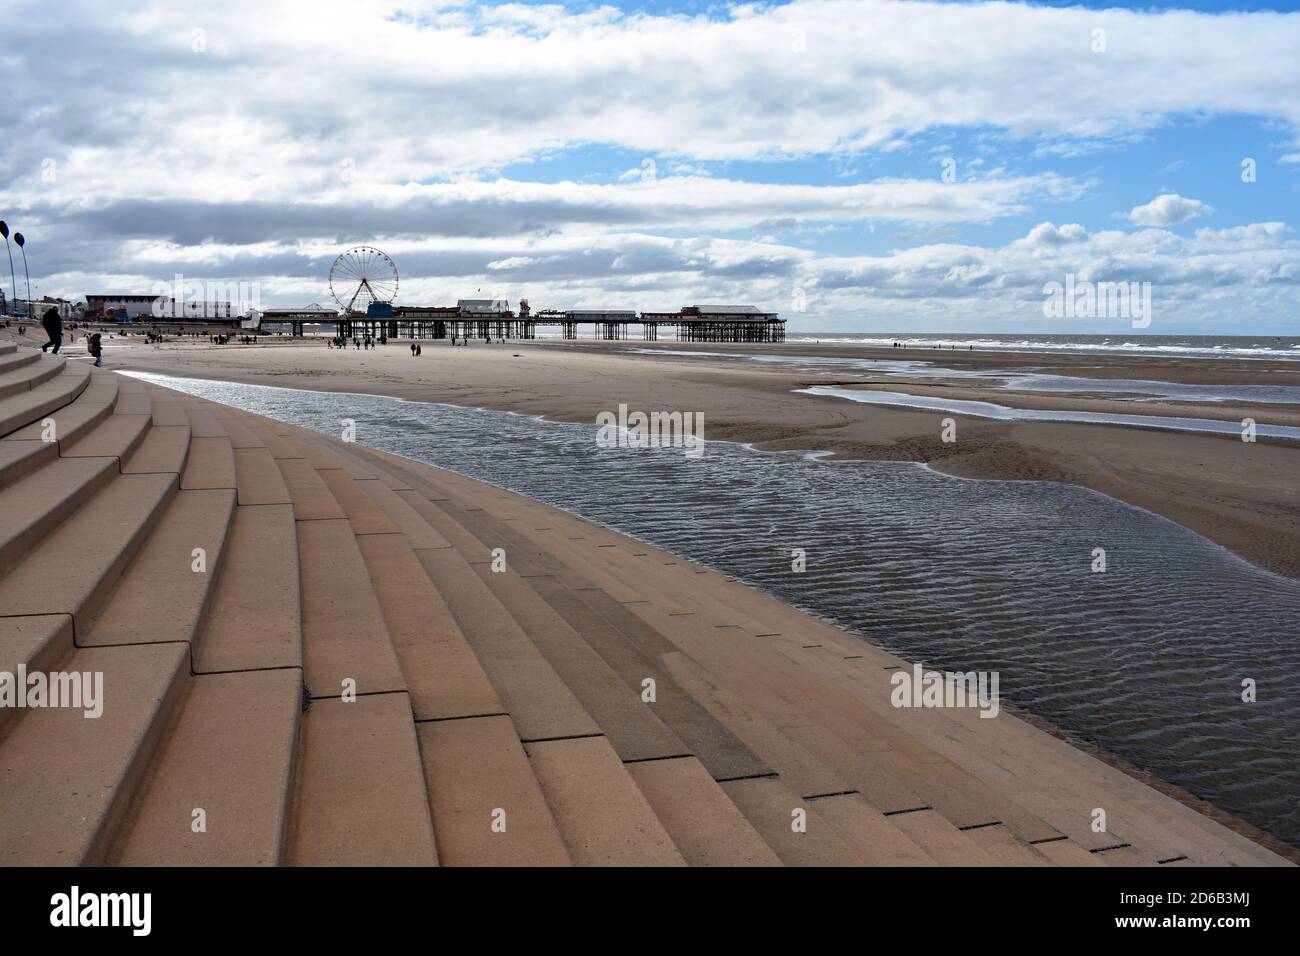 Los escalones conducen desde el paseo hasta la amplia playa de Blackpool, Lancashire, Inglaterra. El muelle central se puede ver que conduce al mar de Irlanda. Foto de stock